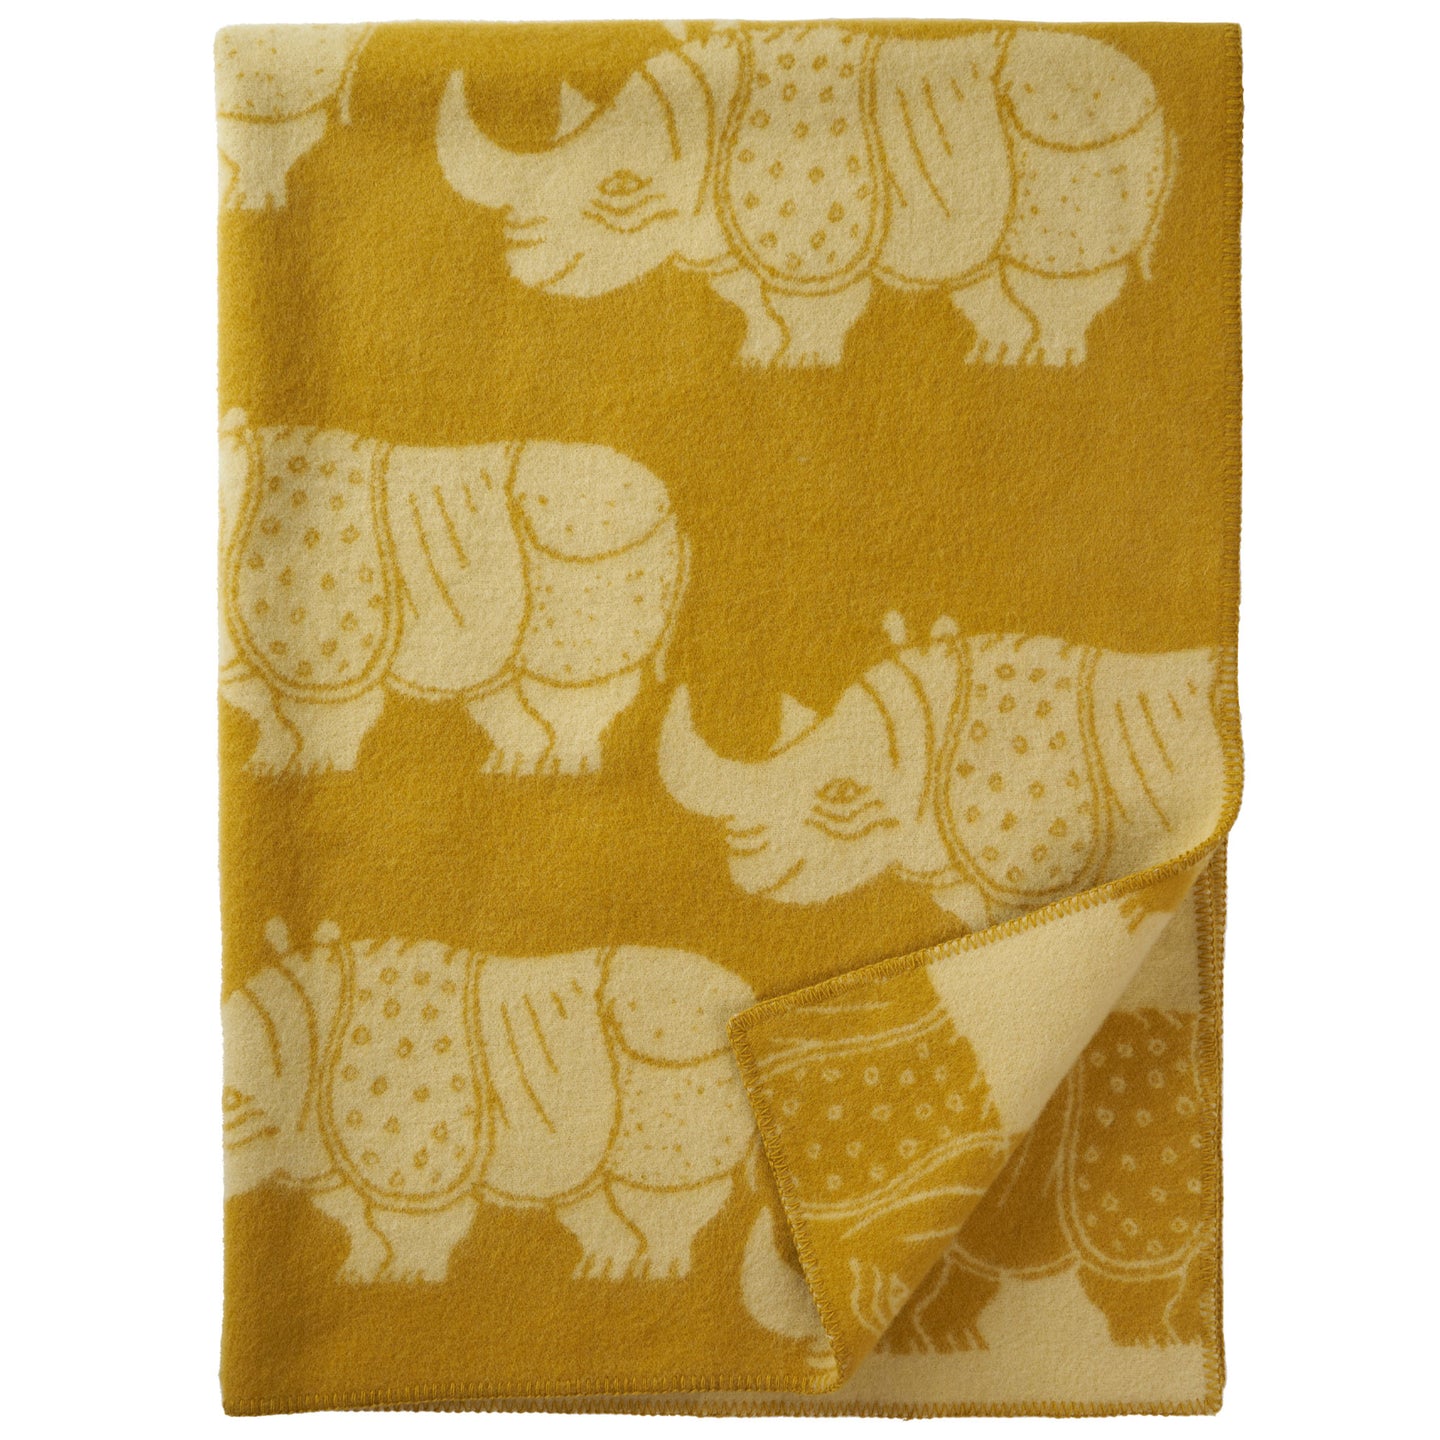 Rhino Yellow Eco Lambswool Blanket